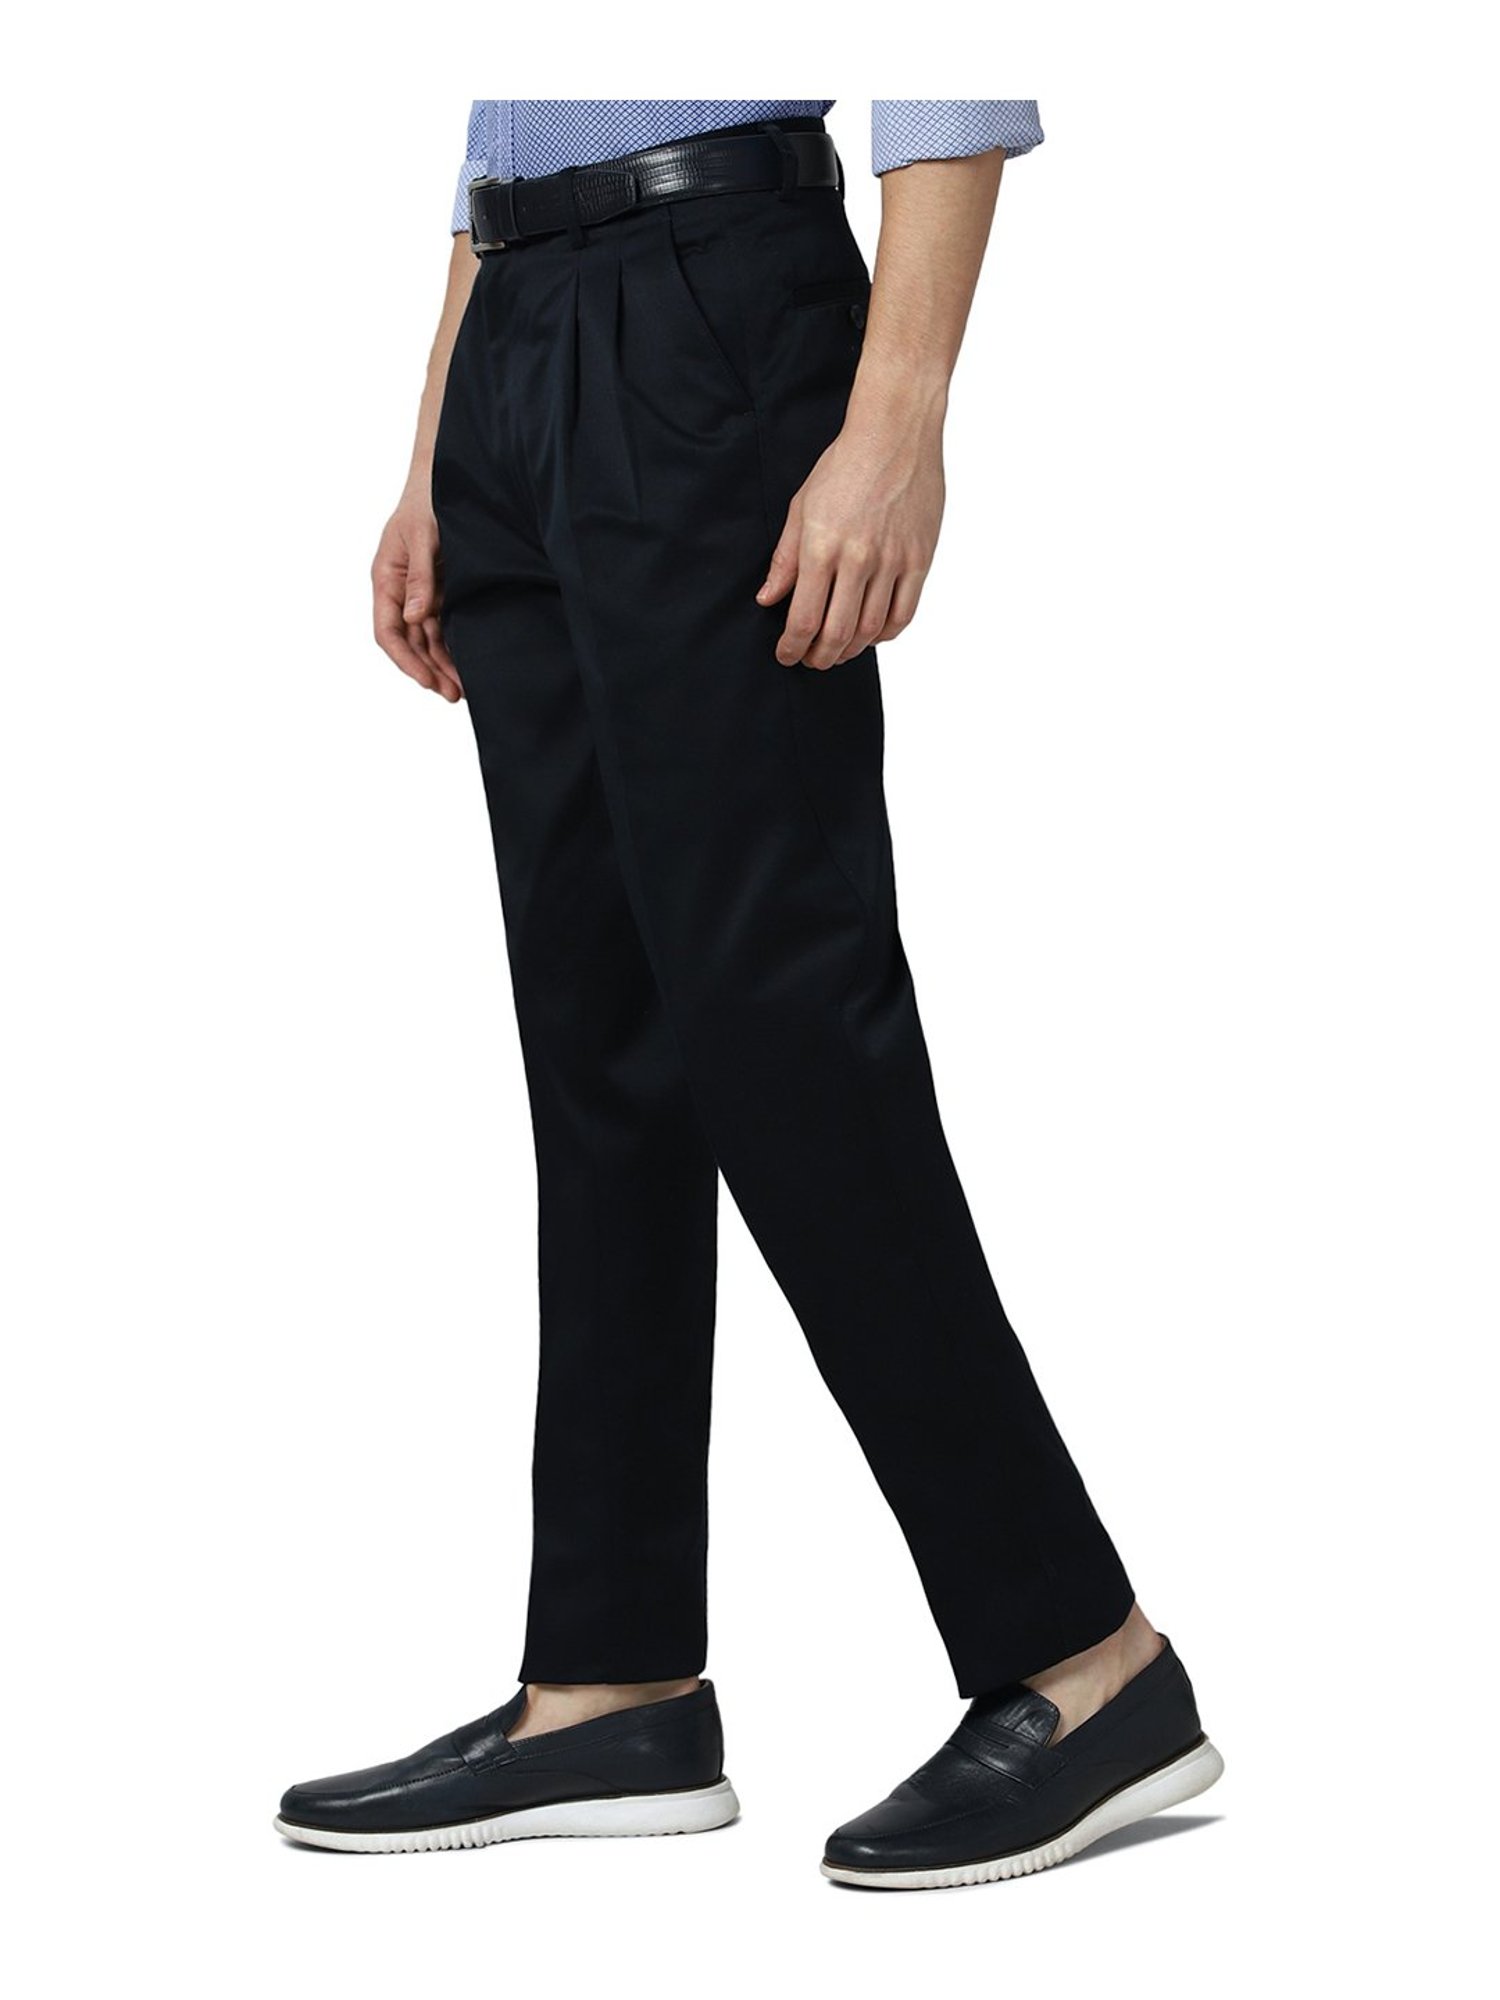 Buy HARSAM Navy Blue Solid Slim Fit Trouser online